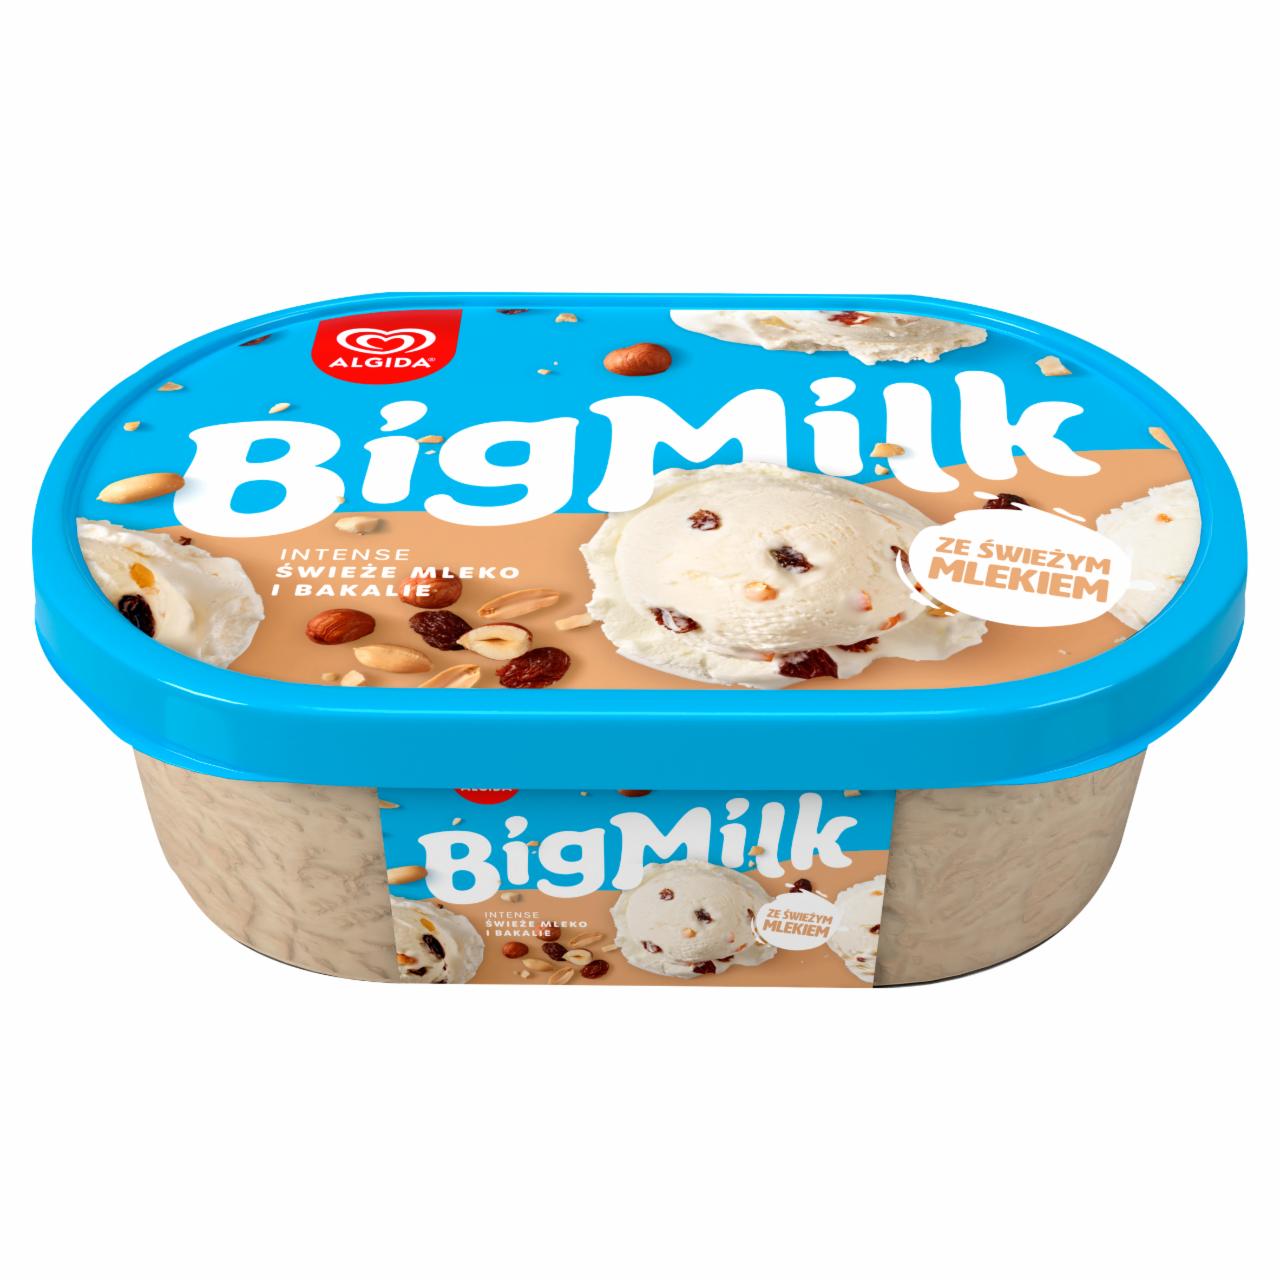 Zdjęcia - Big Milk Intense Lody świeże mleko i bakalie 1000 ml